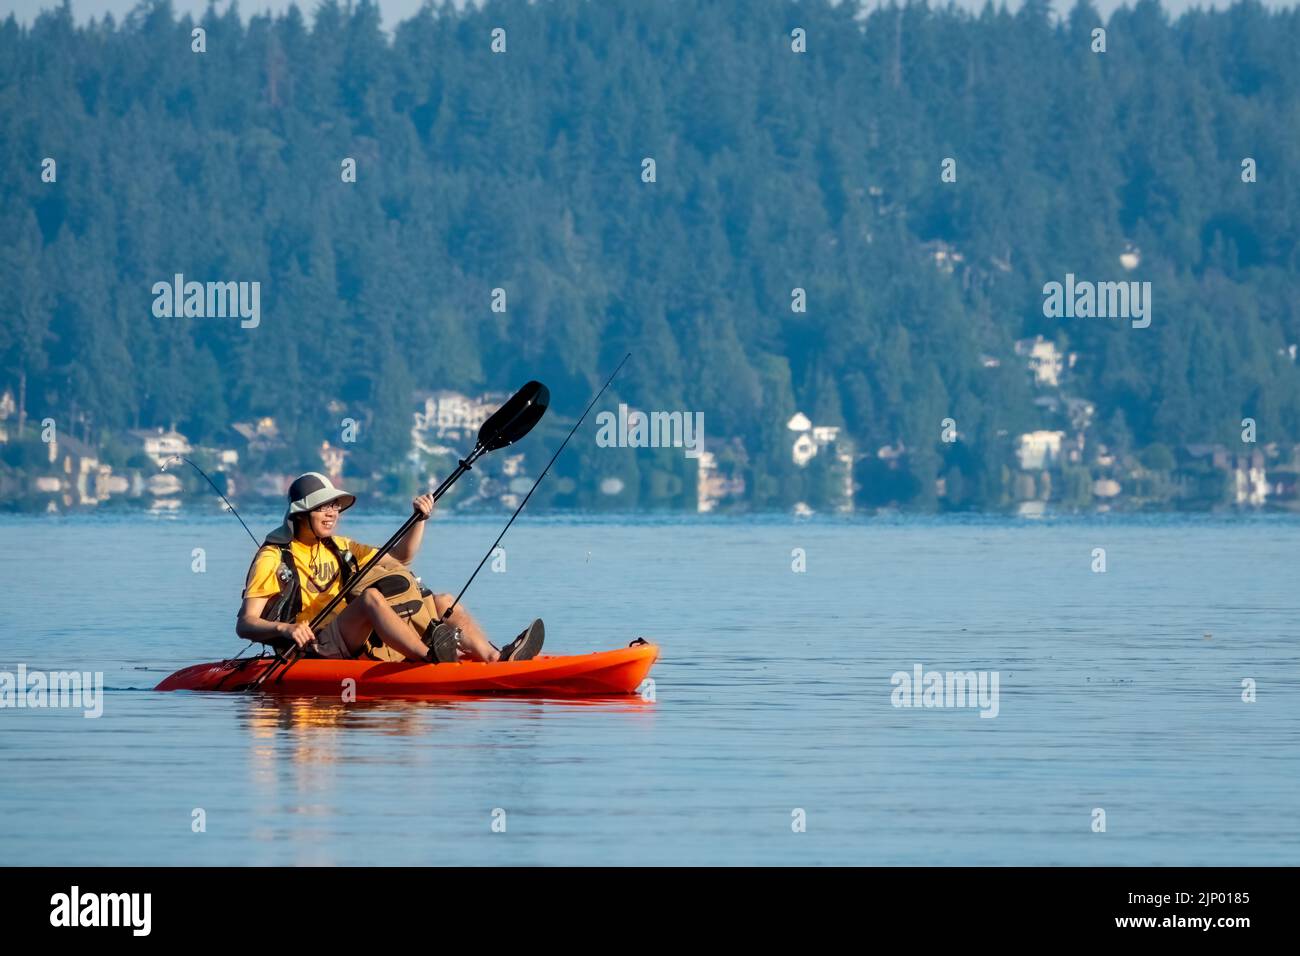 Issaquah, Washington, USA.  Man kayaking in a sit-on-top kayak with fishing rod in Lake Sammamish. Stock Photo